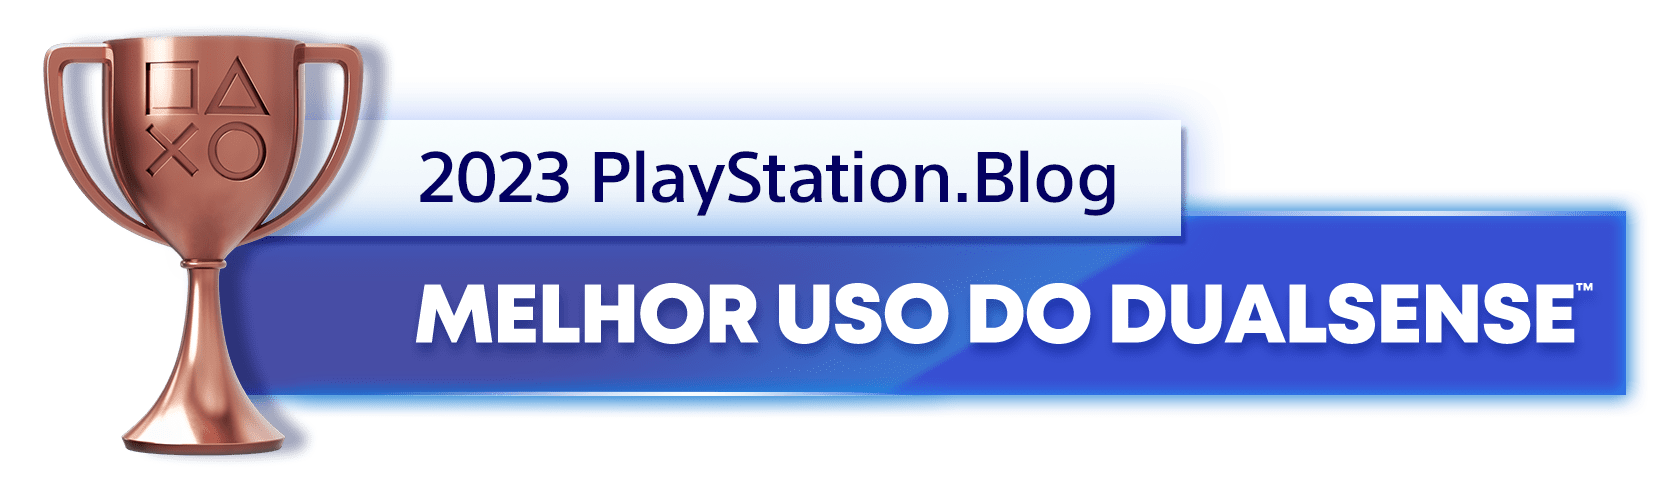 Troféu de Bronze para o vencedor da categoria Melhor Uso do DualSense de 2023 do PlayStation Blog